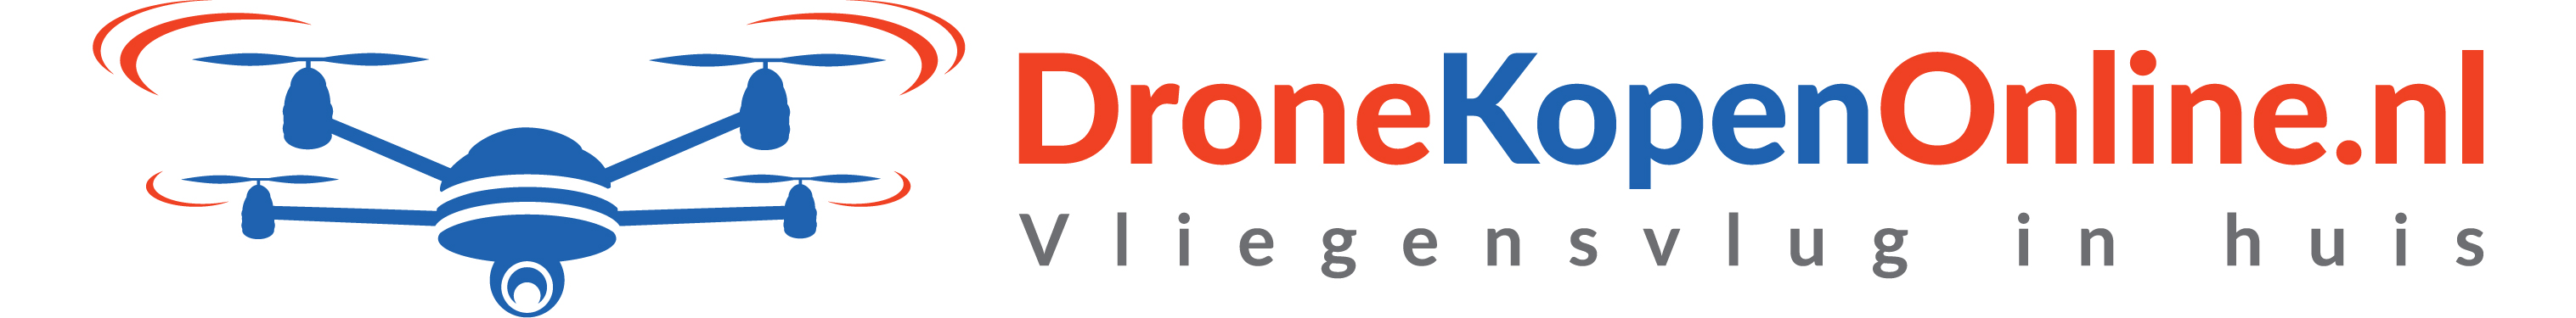 Dronekopenonline.nl reviews, beoordelingen en ervaringen